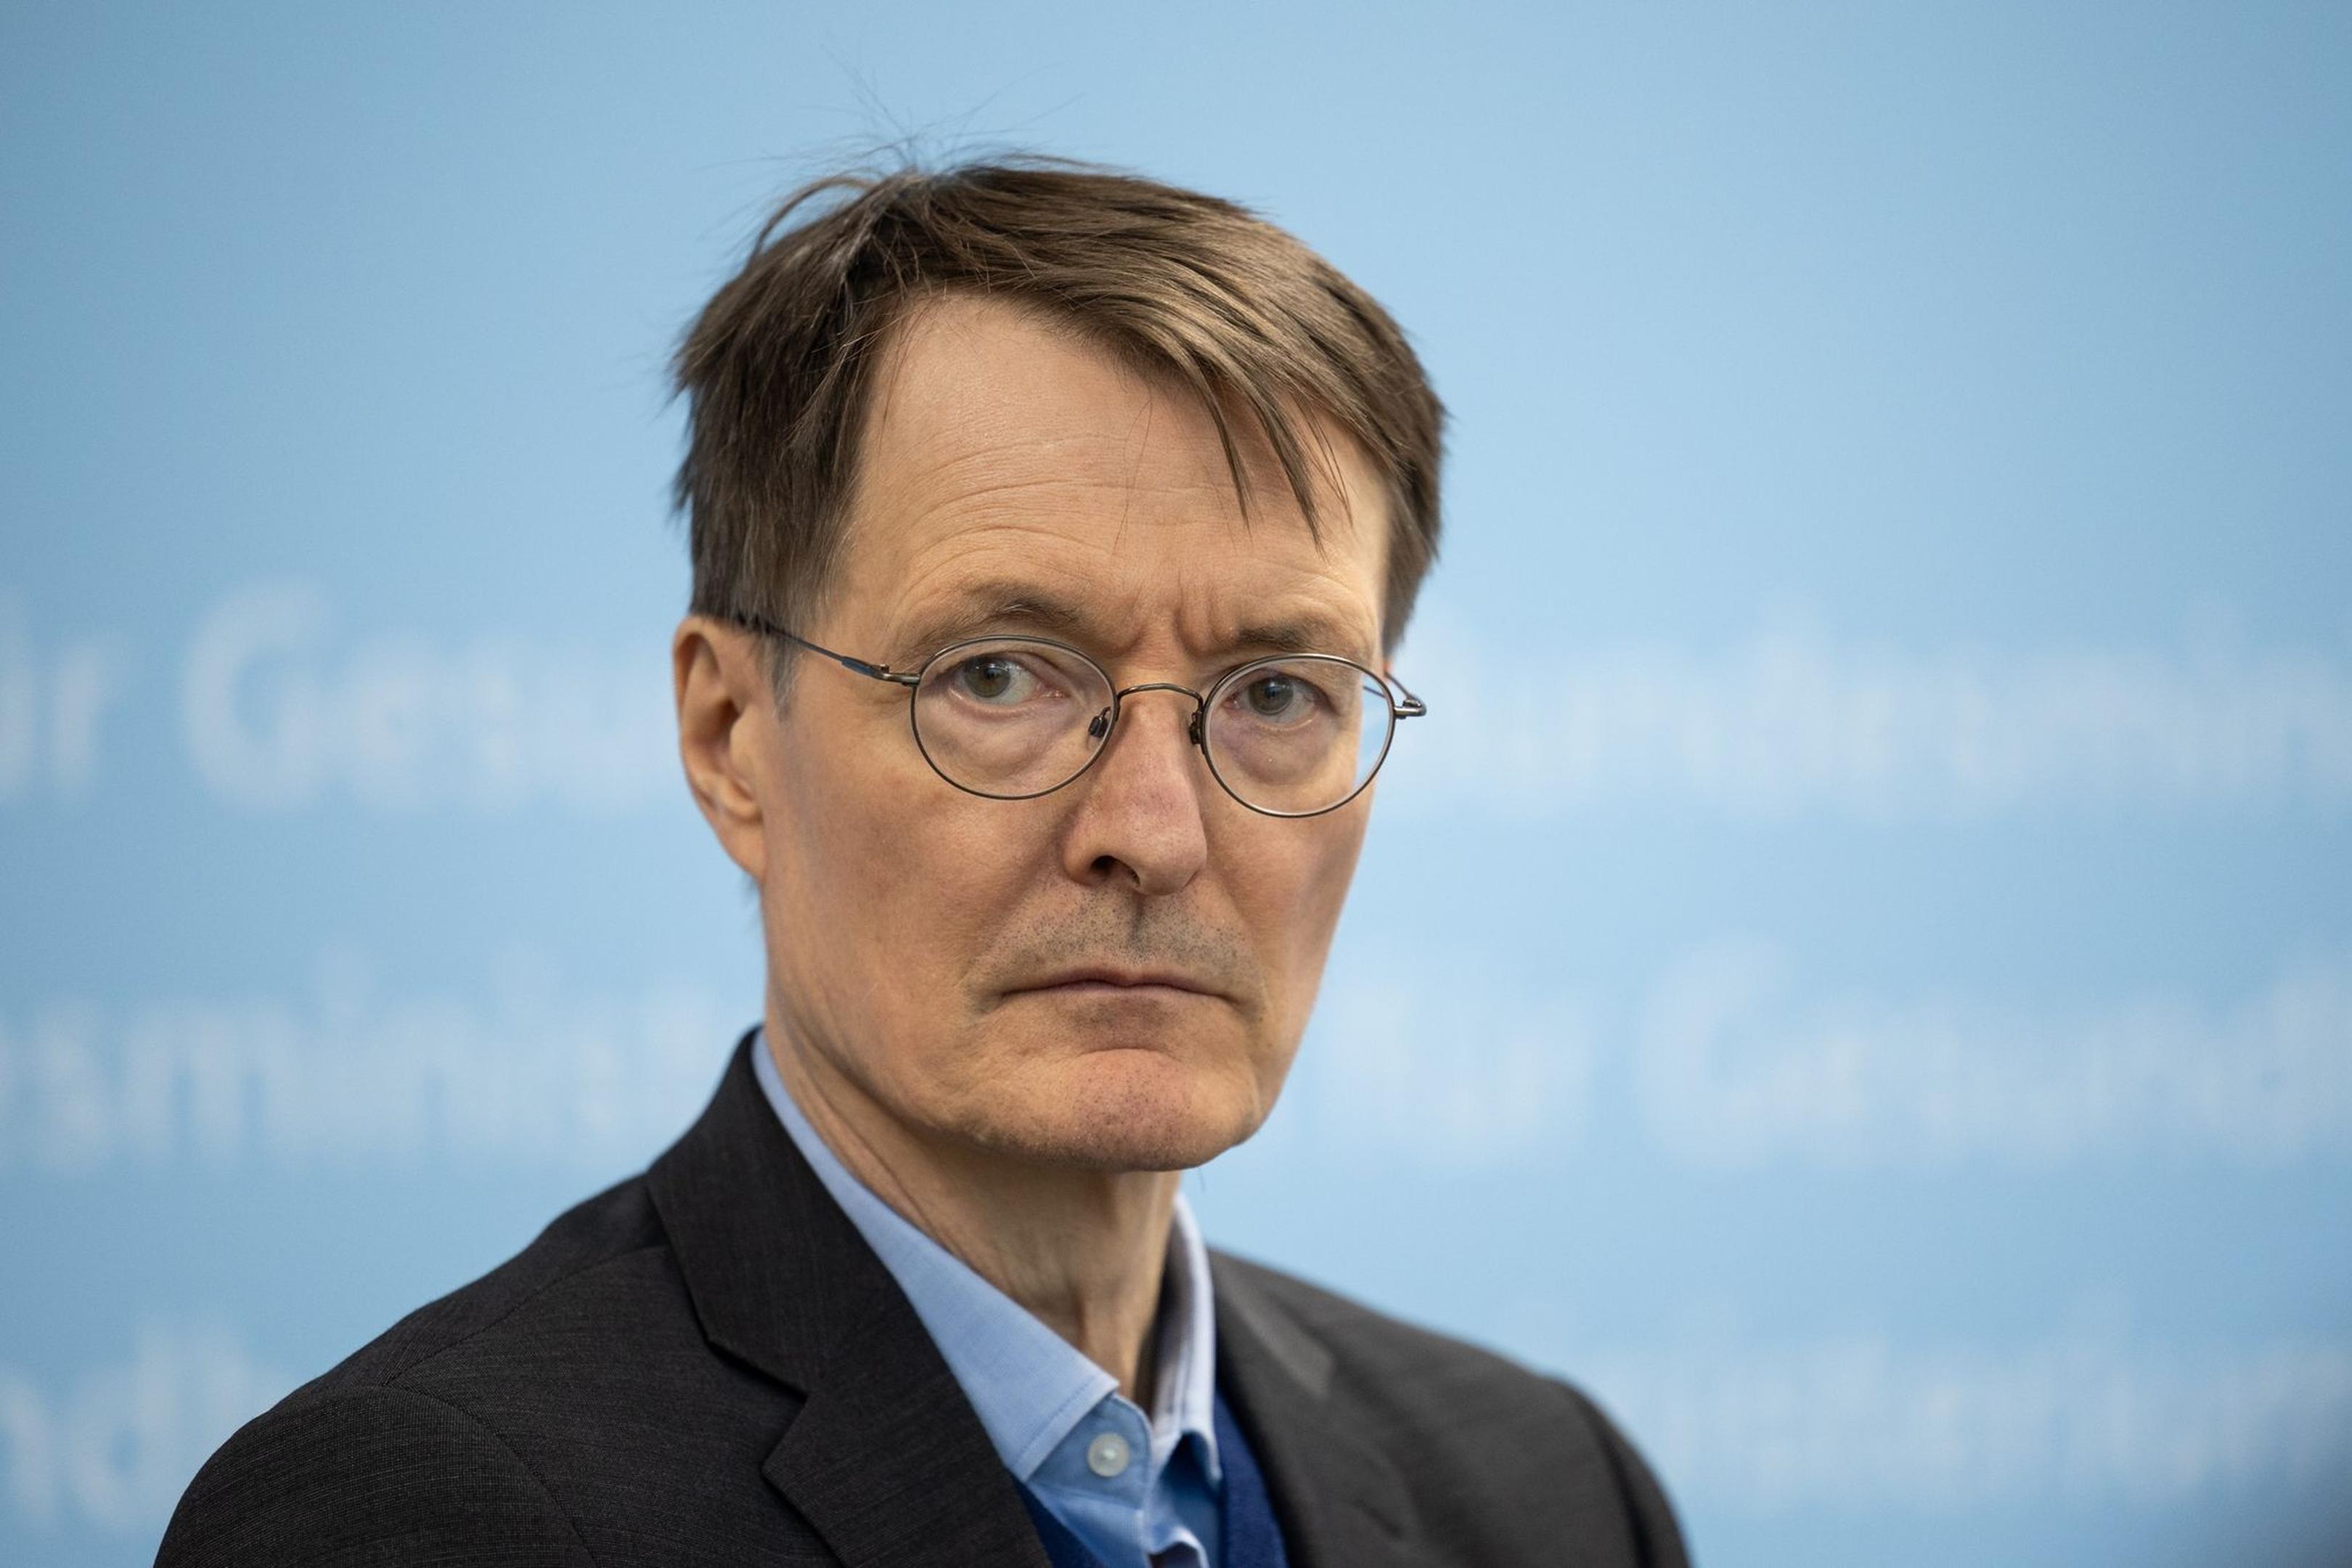 Karl Lauterbach (SPD), Bundesminister für Gesundheit, aufgenommen bei auf einer Pressekonferenz.